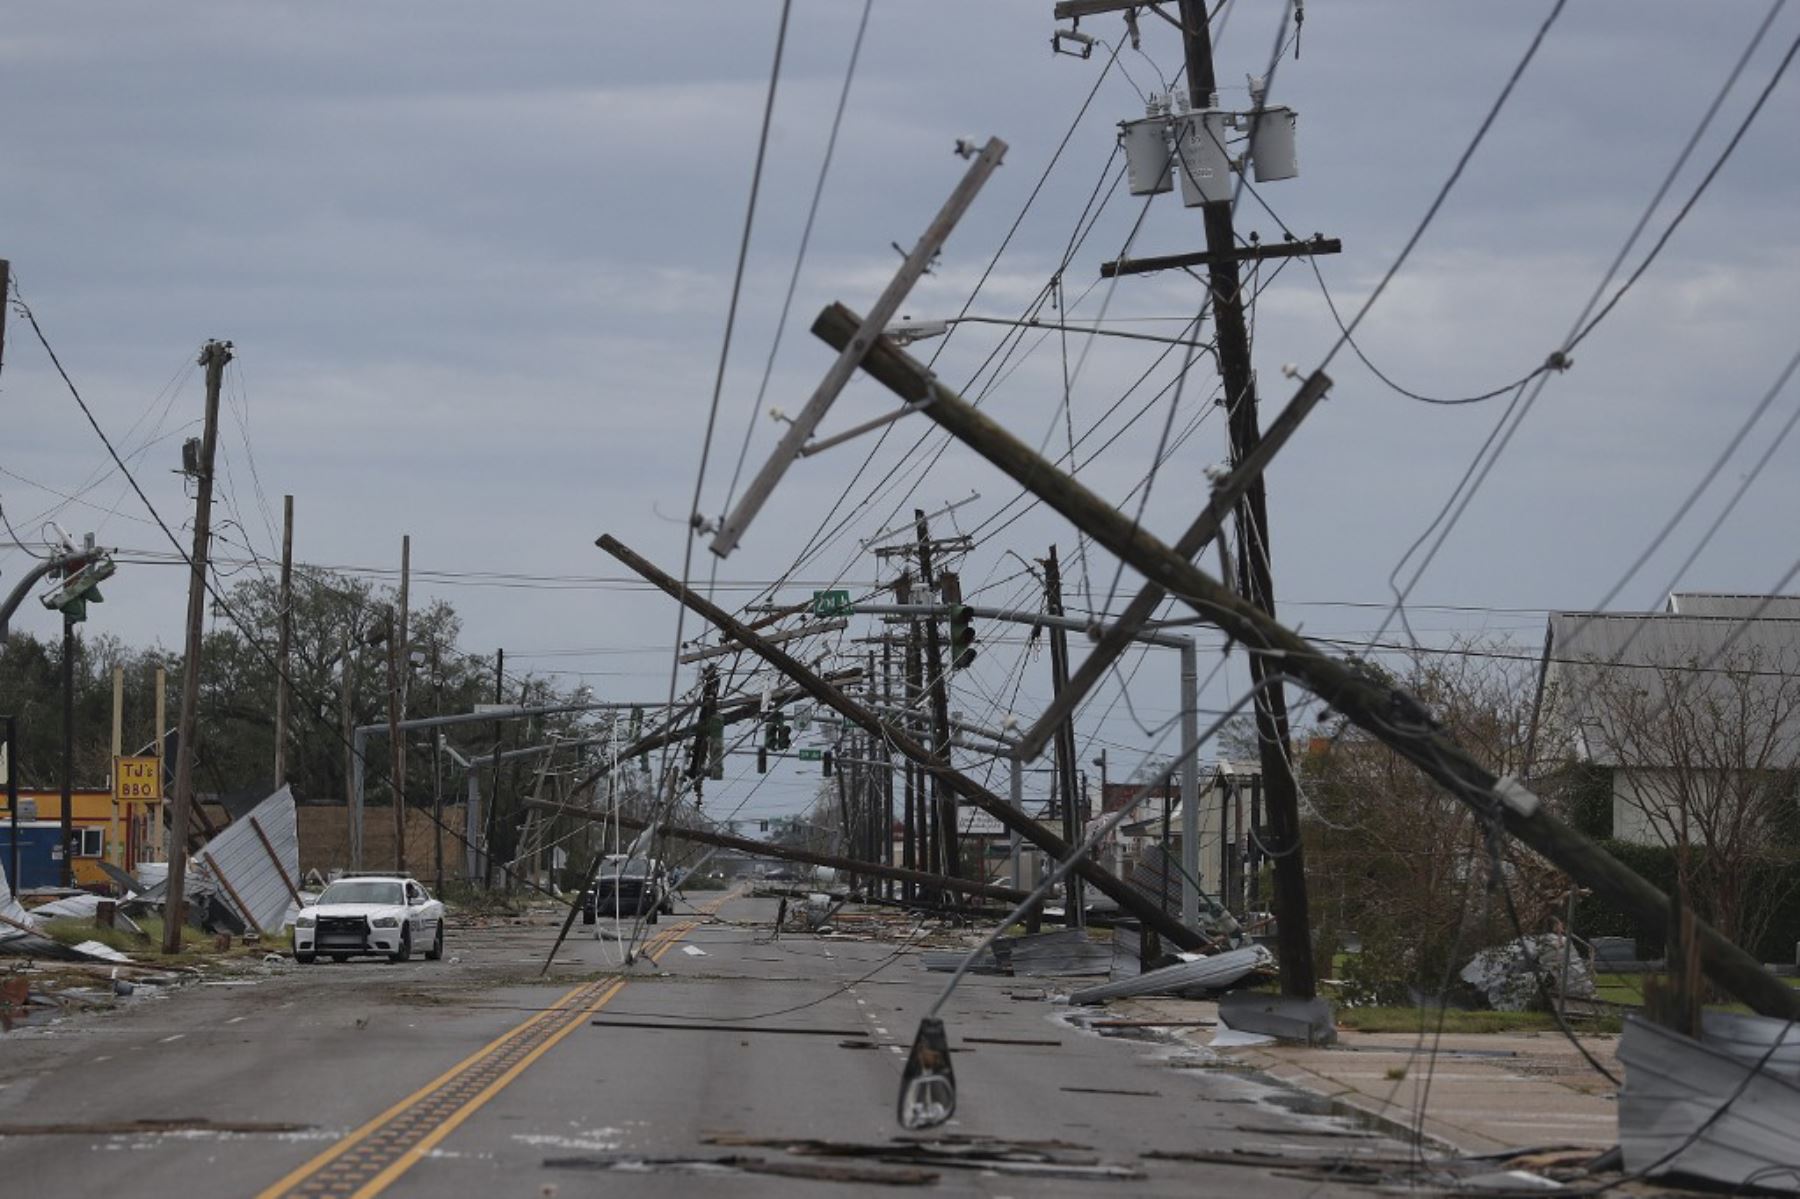 Calle llena de escombros y líneas eléctricas caídas después de que el huracán Laura pasó  y azotó con fuertes vientos causando grandes daños, en Lake Charles, Louisiana.Foto:AFP